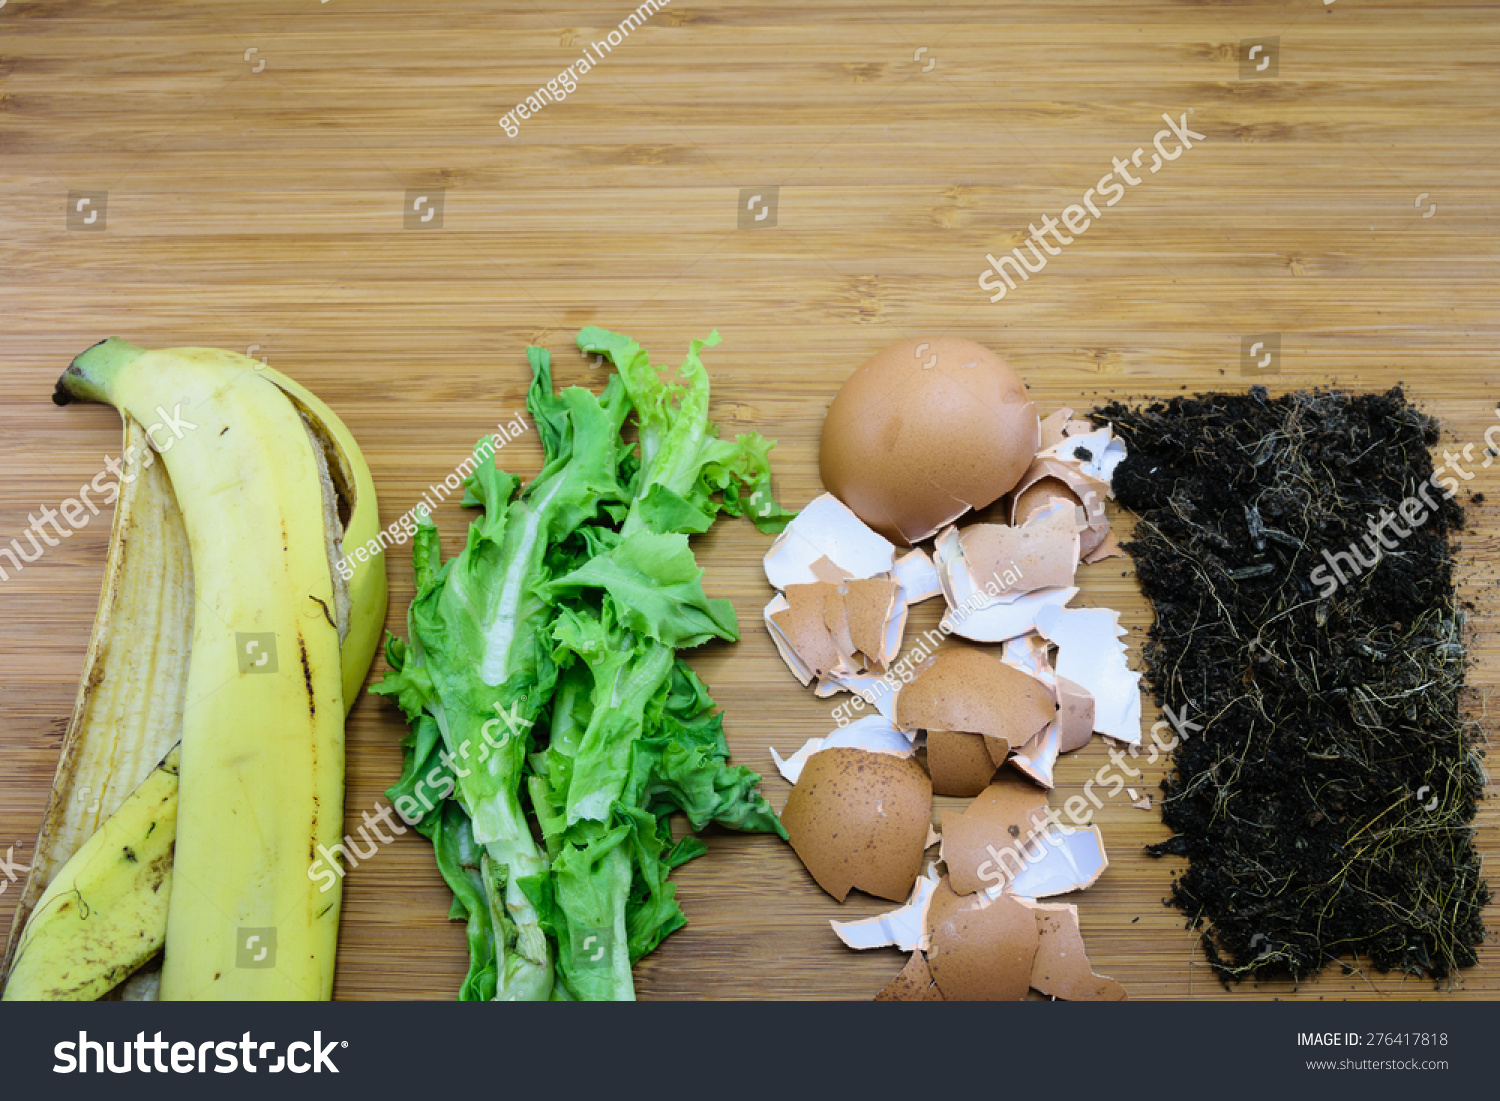 自制的厨房垃圾制成的肥料如香蕉皮,蔬菜,蛋壳